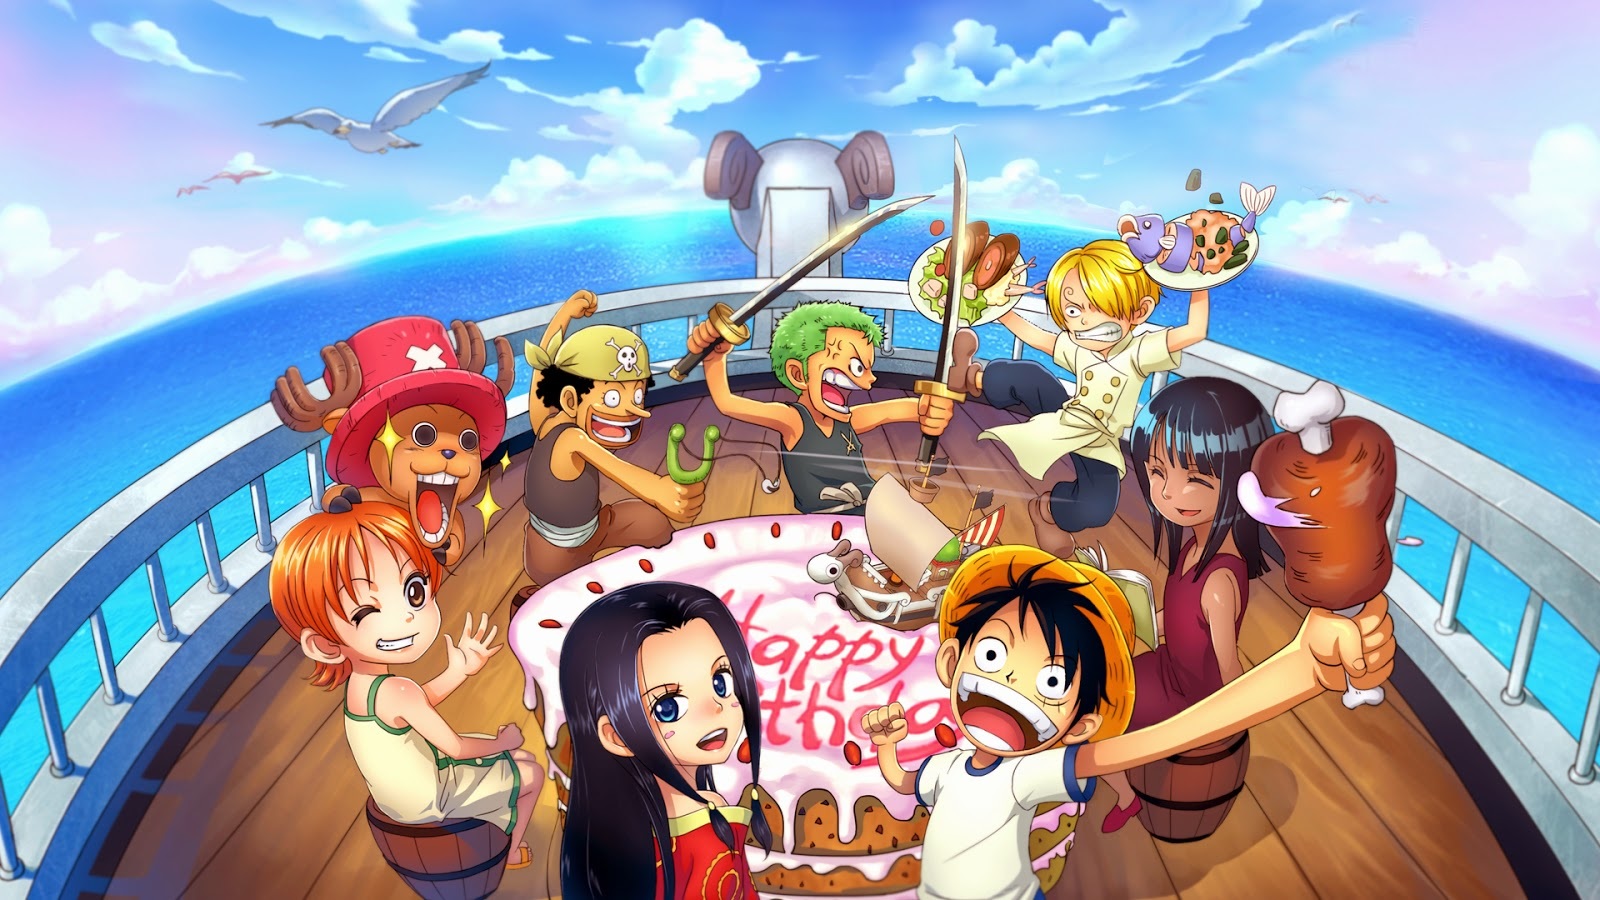 Với bức ảnh Anime One Piece này, bạn sẽ được trải nghiệm trọn vẹn thế giới phức tạp và đầy màu sắc của Luffy và đồng đội. Được tạo nên bởi những họa sĩ tài ba, bức ảnh này sẽ khiến bạn say mê và mê hoặc không chỉ với hình ảnh mà còn cả cảm xúc.